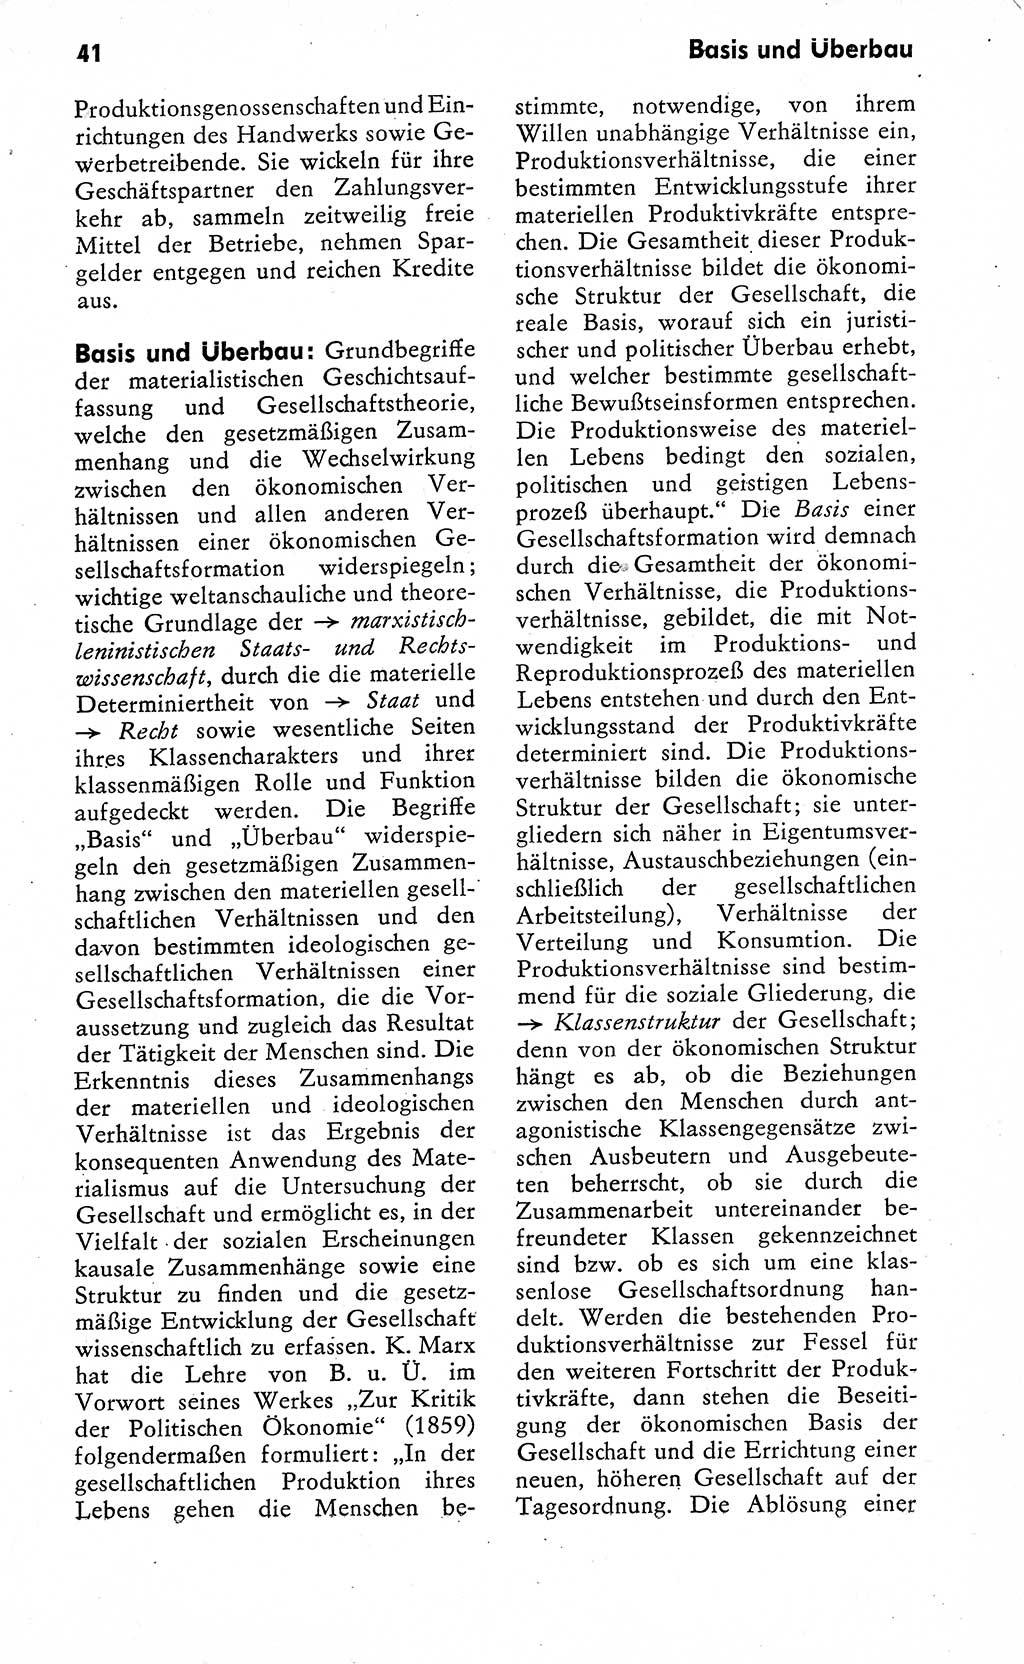 Wörterbuch zum sozialistischen Staat [Deutsche Demokratische Republik (DDR)] 1974, Seite 41 (Wb. soz. St. DDR 1974, S. 41)